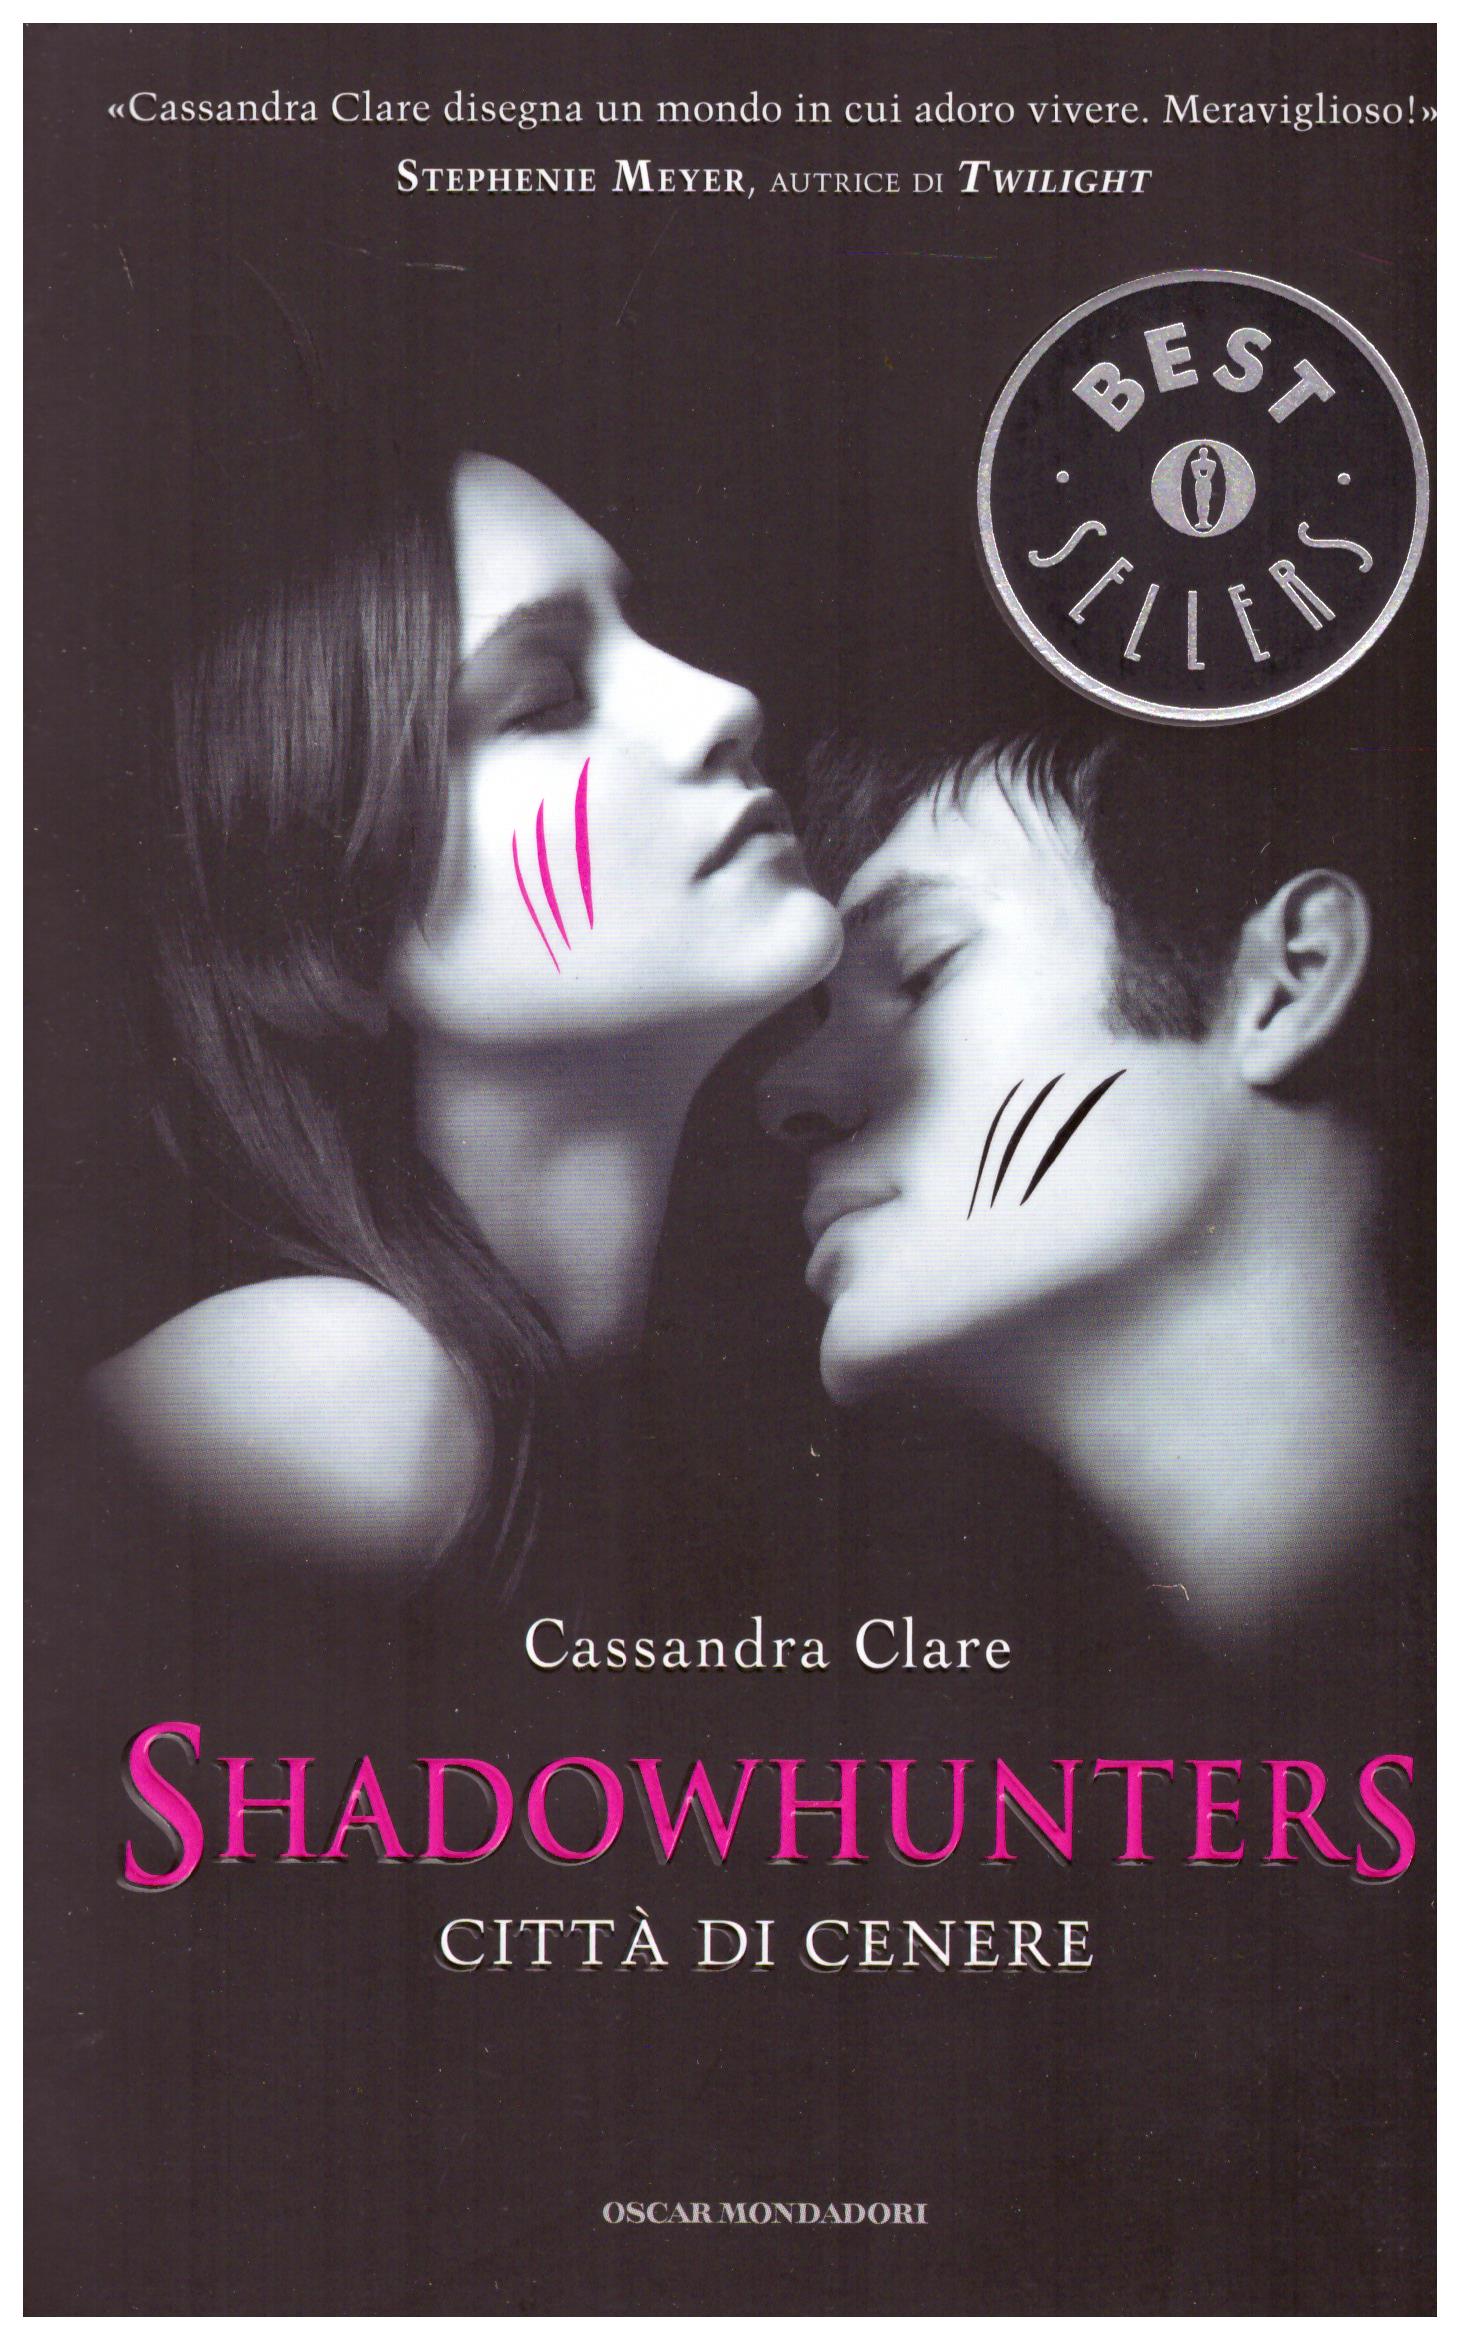 Titolo: Shadowhunters Città di cenere  Autore: Cassandra Clare  Editore: mondadori 2014